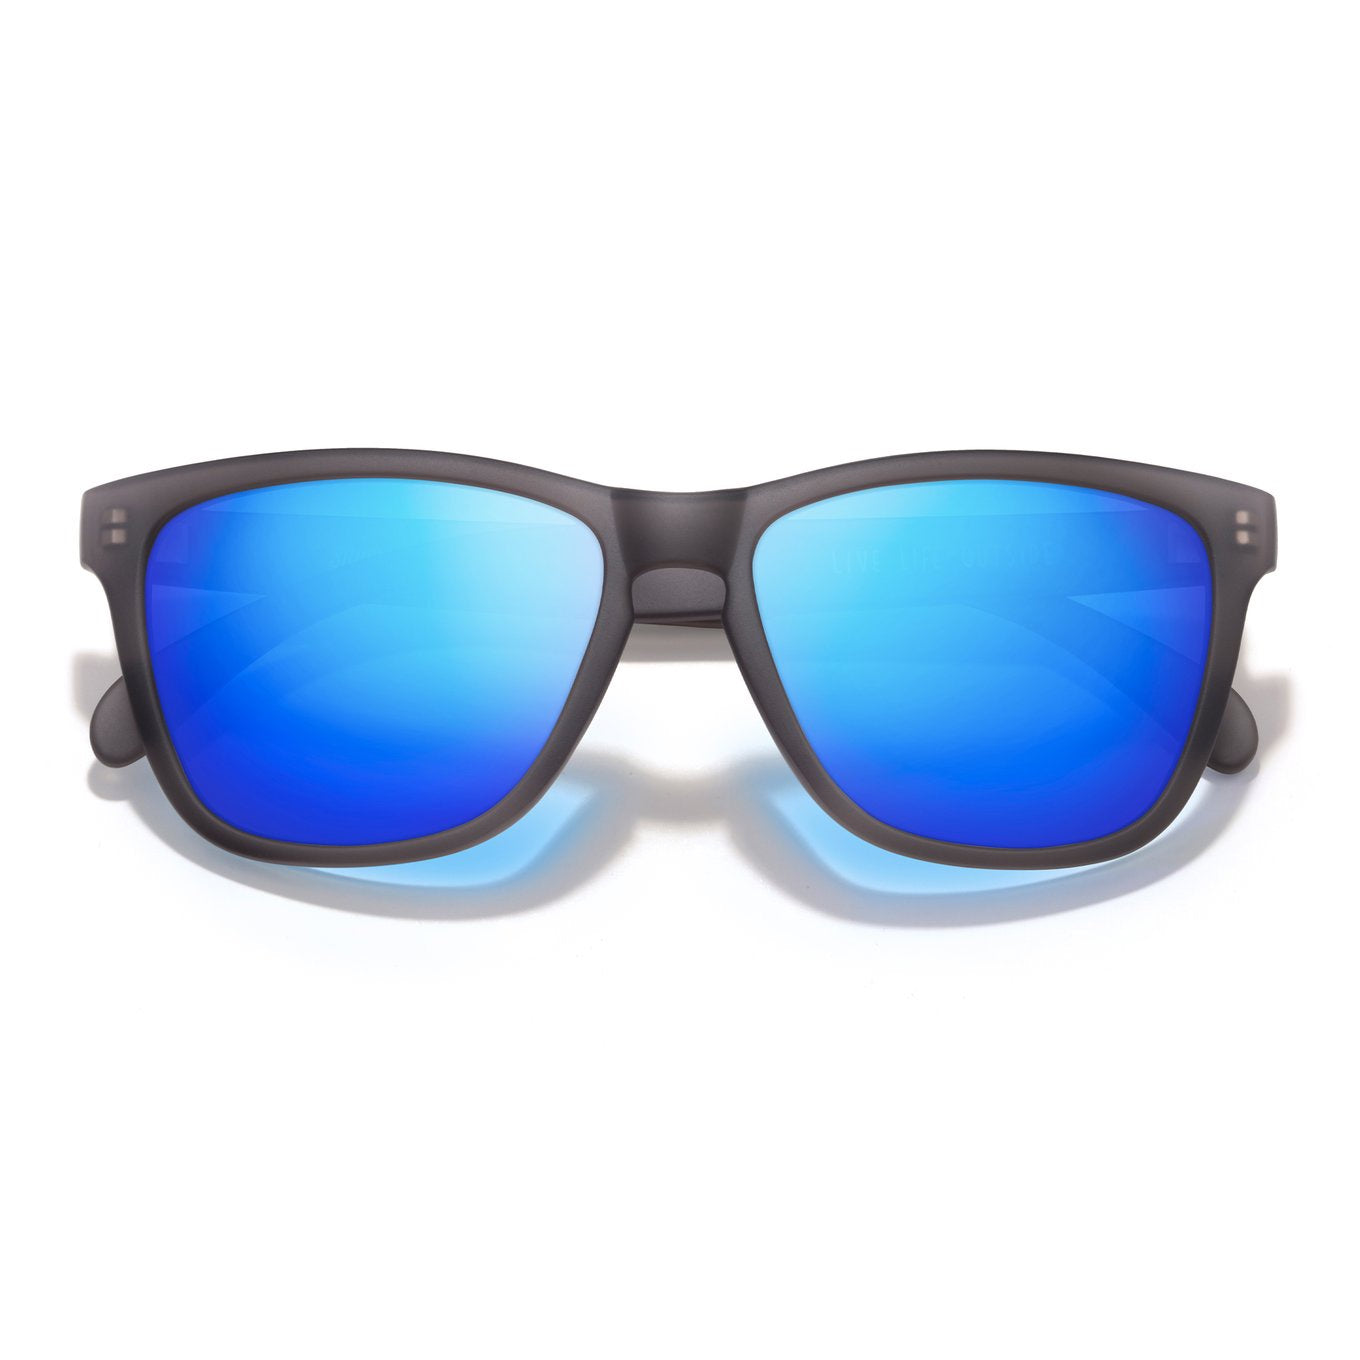 SUNSKI Sunglasses - Headland Grey/Blue